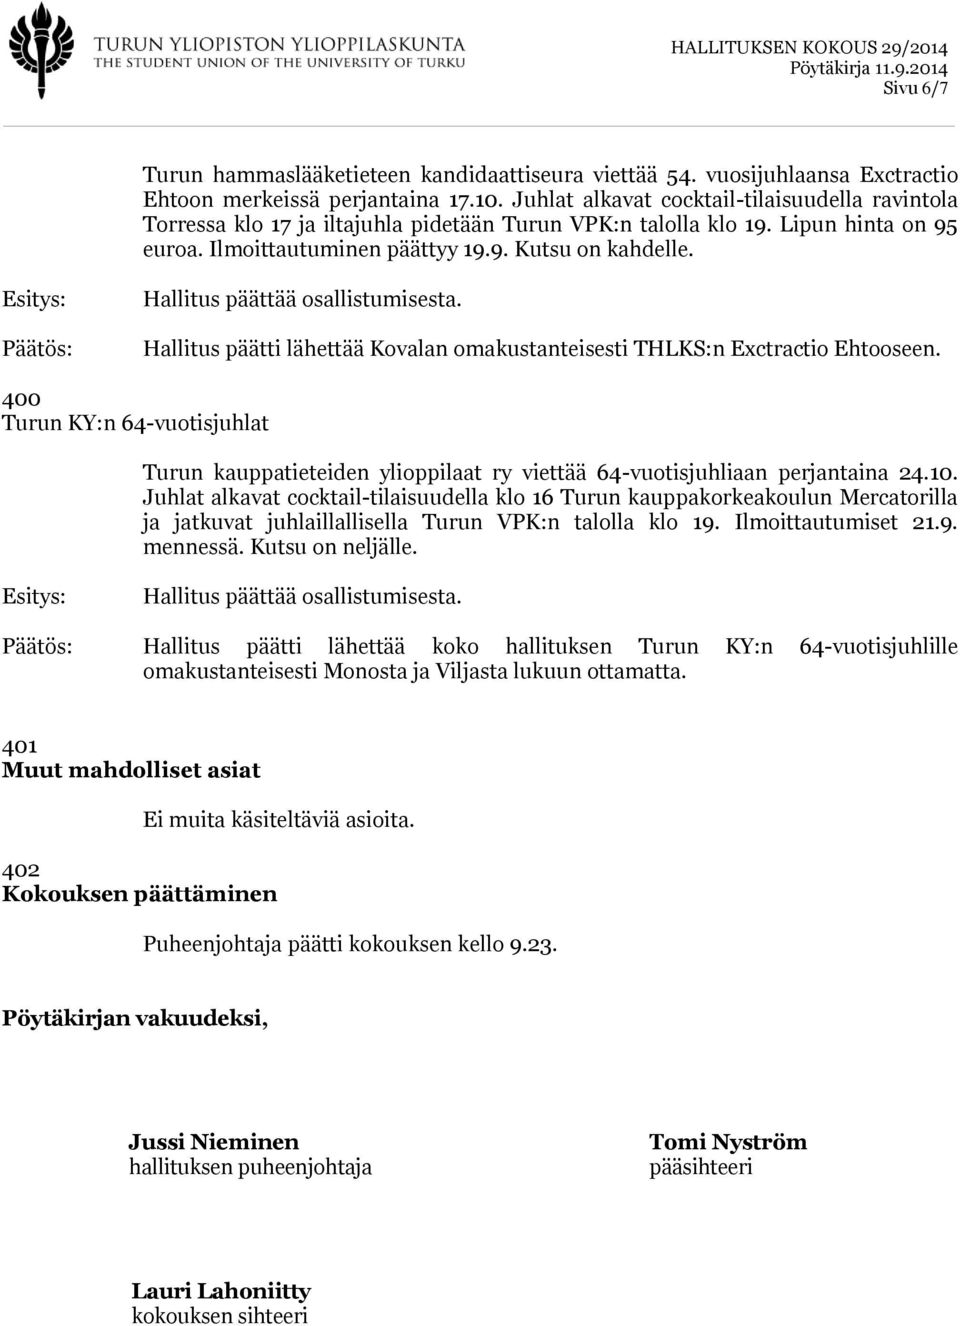 Hallitus päätti lähettää Kovalan omakustanteisesti THLKS:n Exctractio Ehtooseen. 400 Turun KY:n 64-vuotisjuhlat Turun kauppatieteiden ylioppilaat ry viettää 64-vuotisjuhliaan perjantaina 24.10.